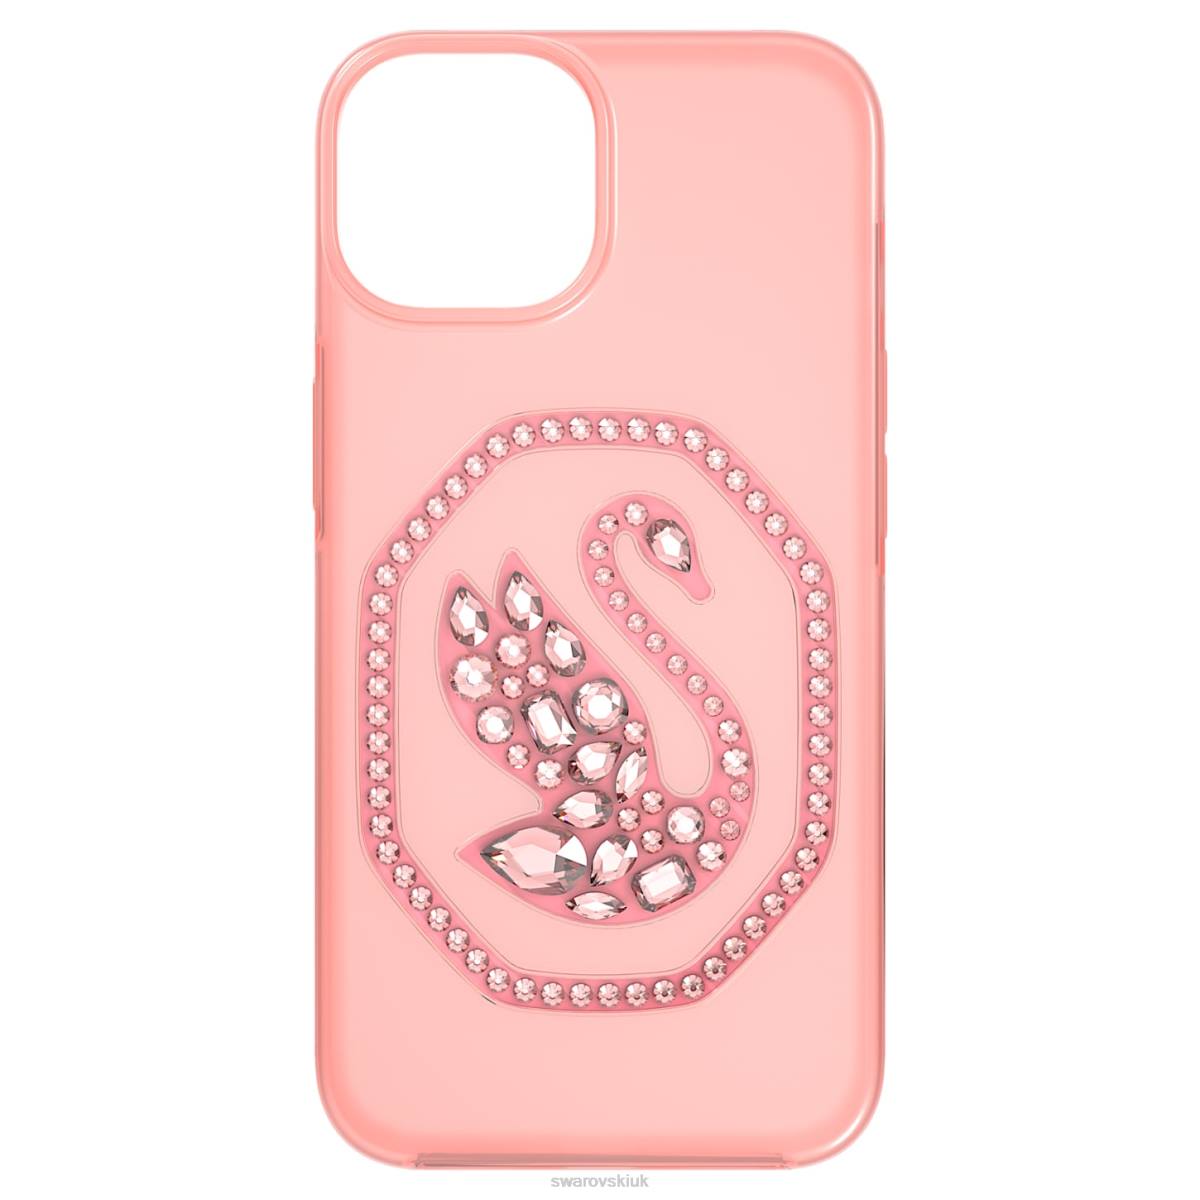 Accessories Swarovski Smartphone case Pale pink 48JX1368